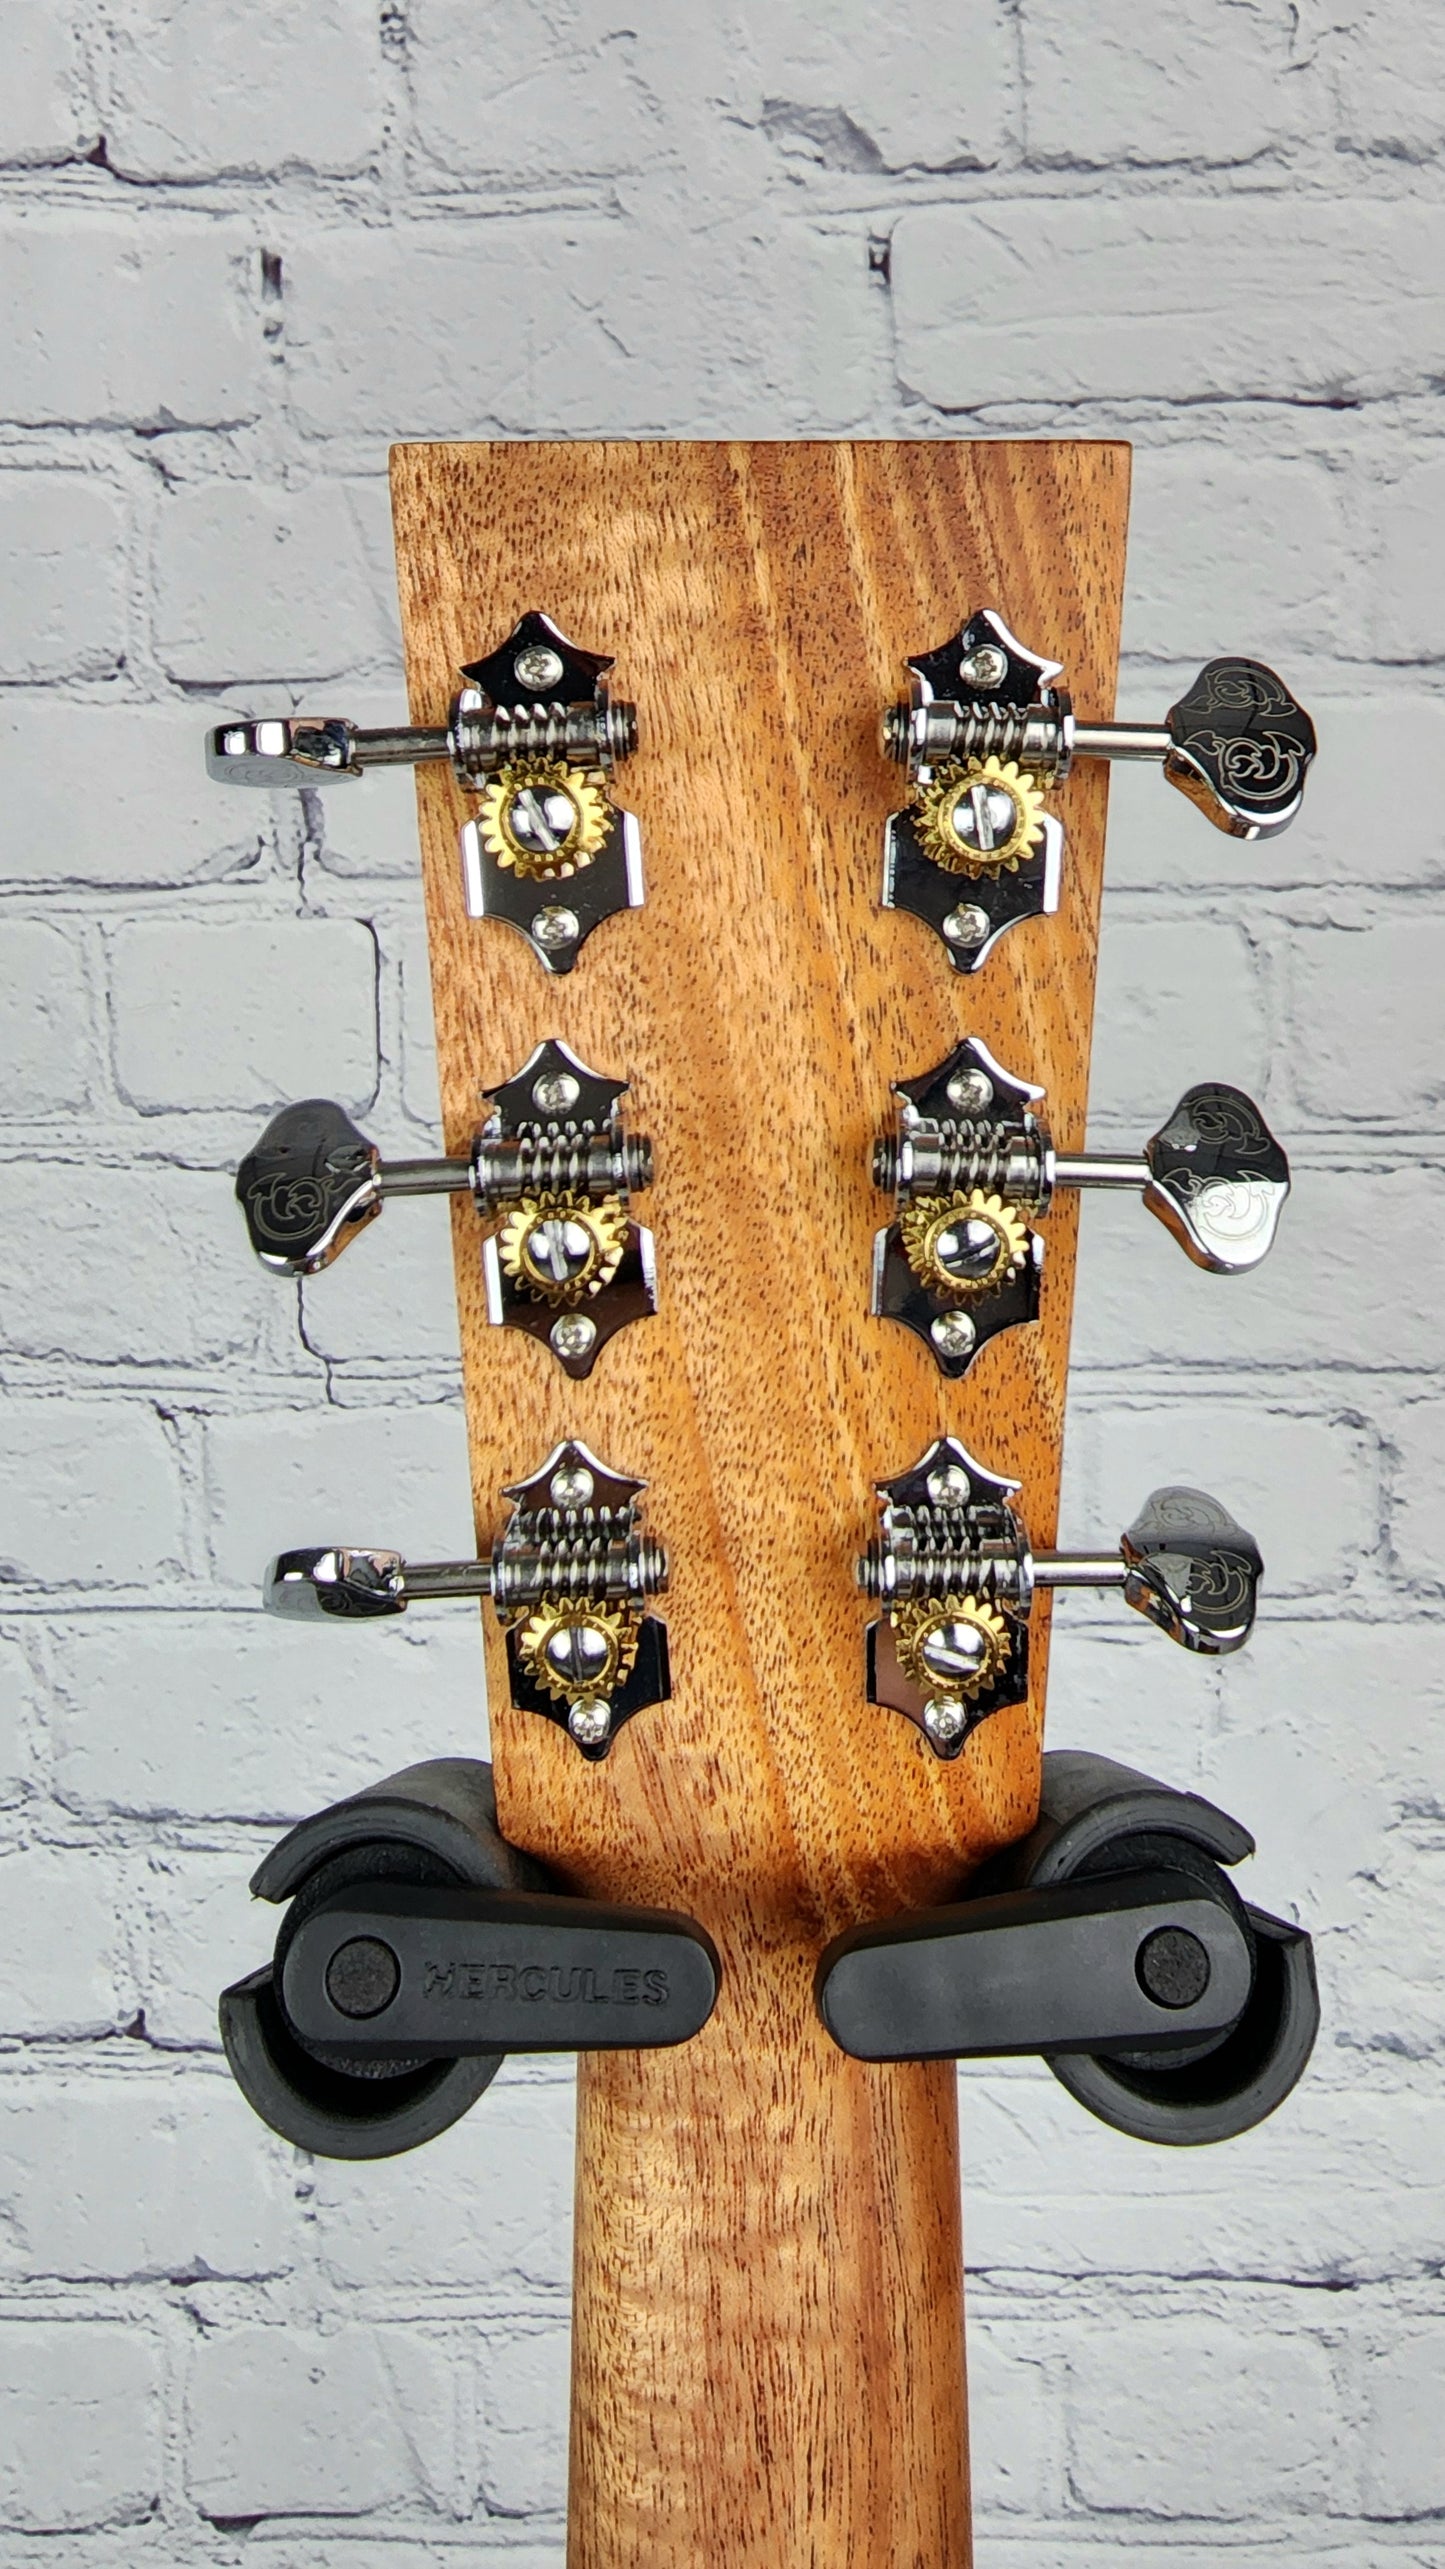 Larrivee OM-40 Orchestra Model Rosewood Acoustic Guitar Fast Neck Vine Logo